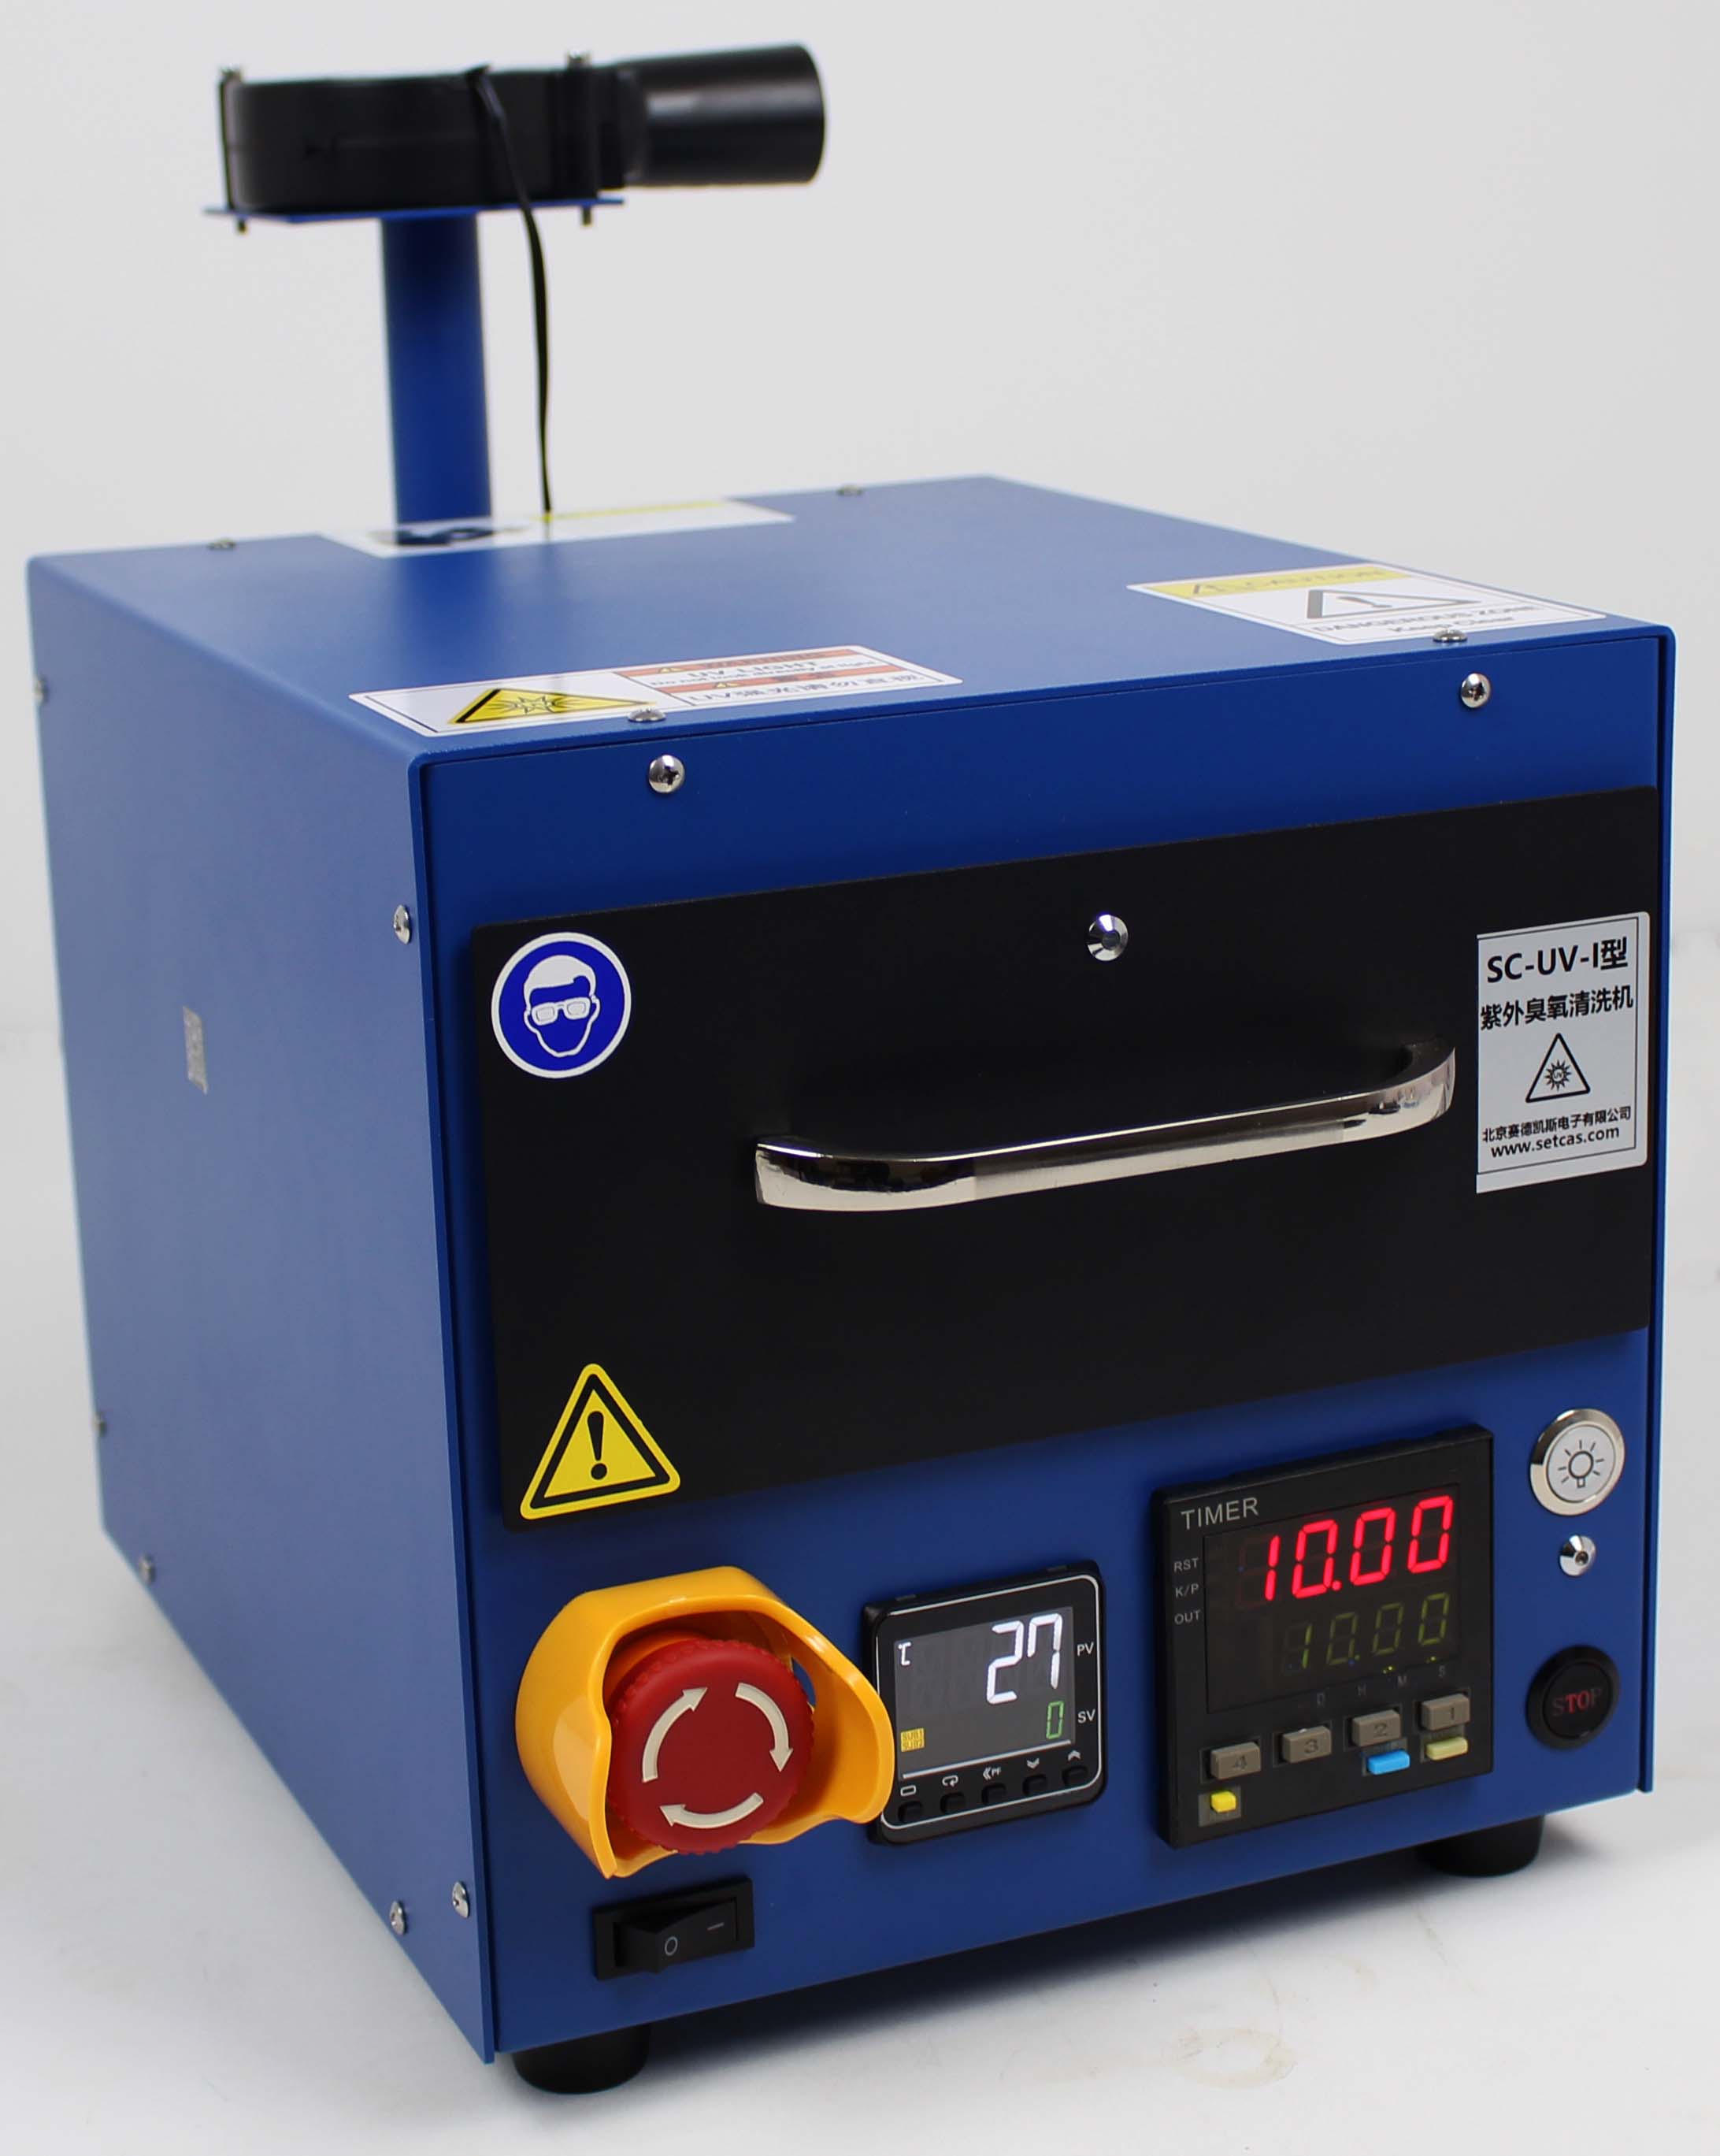 SC-UV-I型紫外臭氧清洗机(160X200mm)-北京赛德凯斯电子有限责任公司